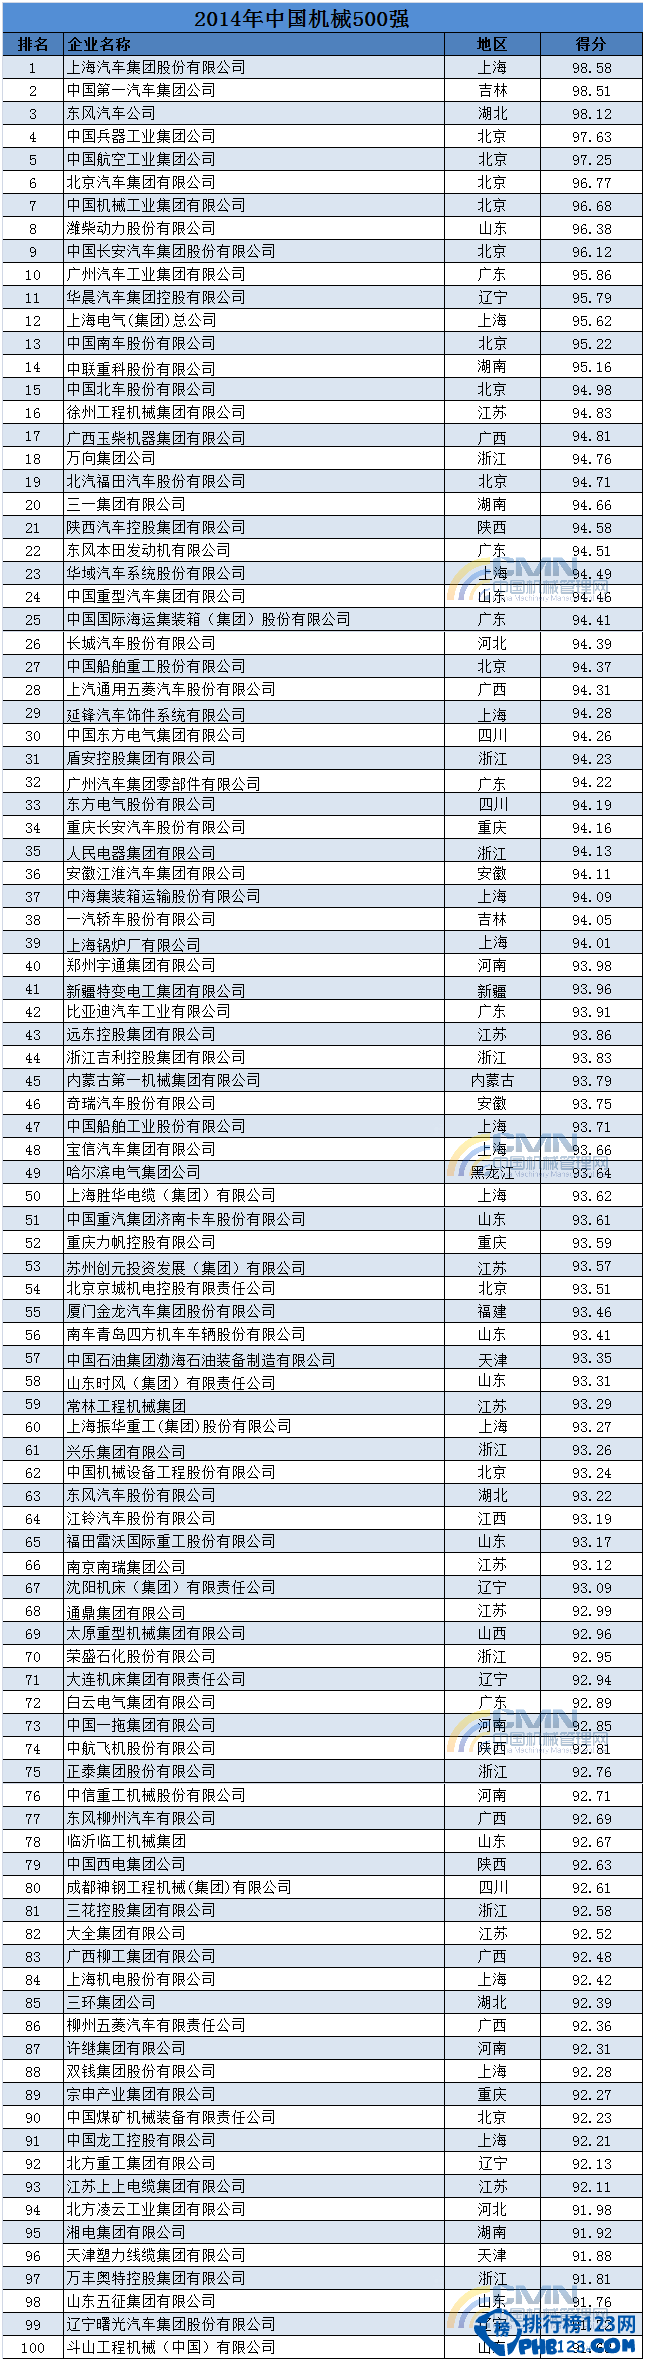 2014中國機械500強排行榜